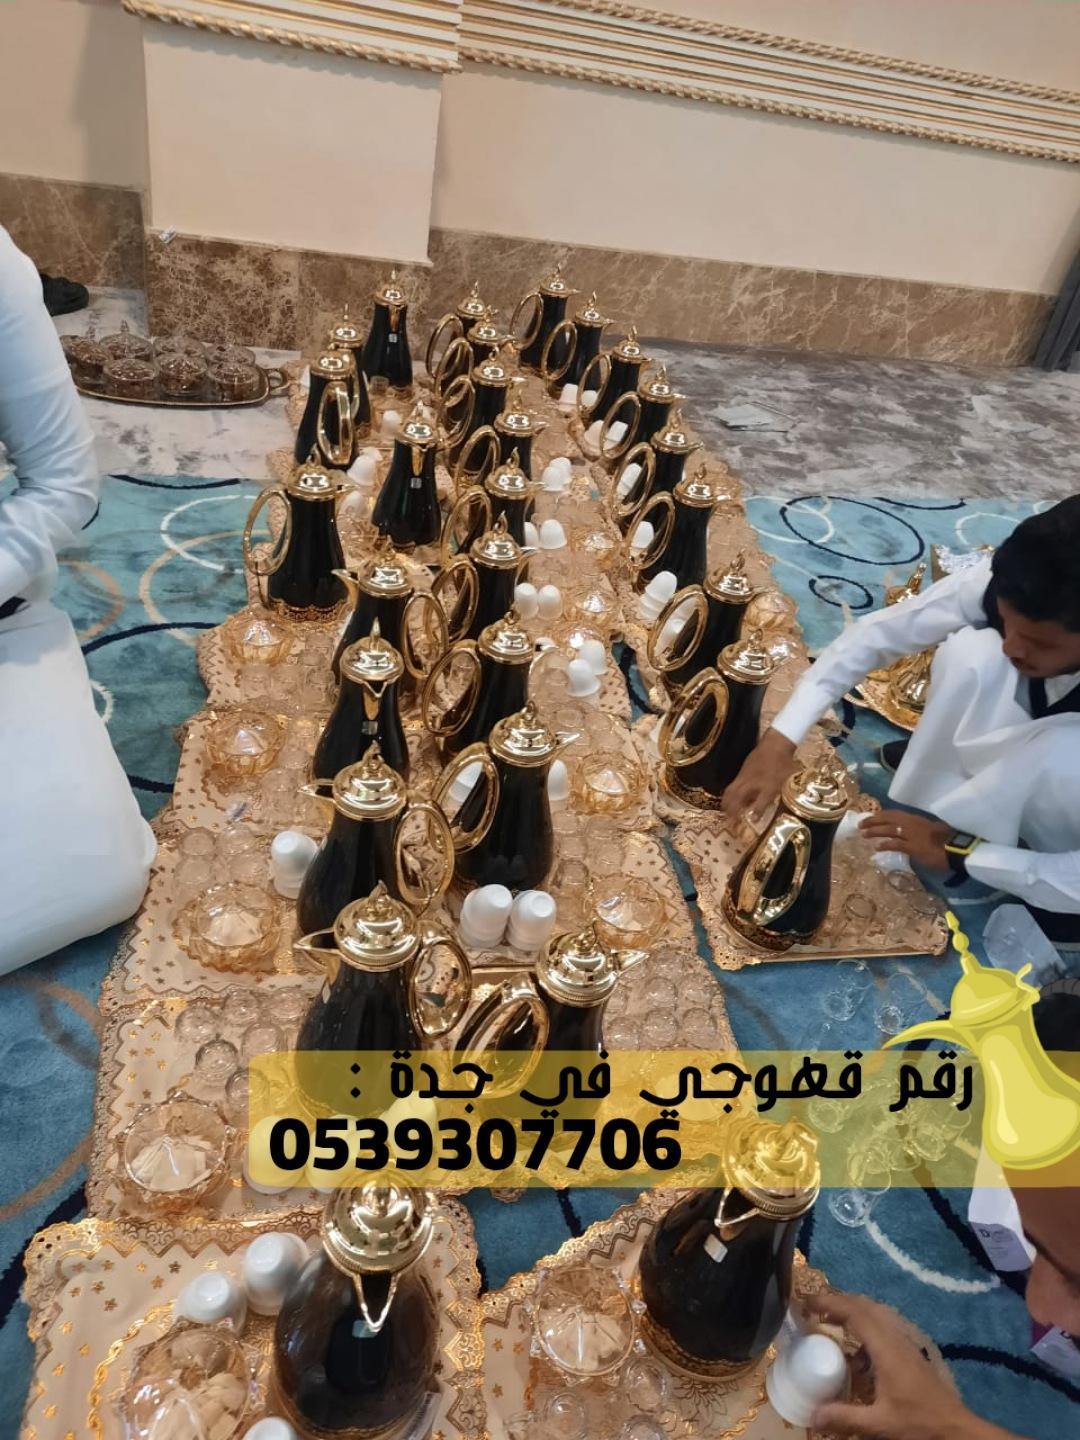 صبابين قهوه قهوجي و مباشرات زواج في جدة,0539307706  348193106